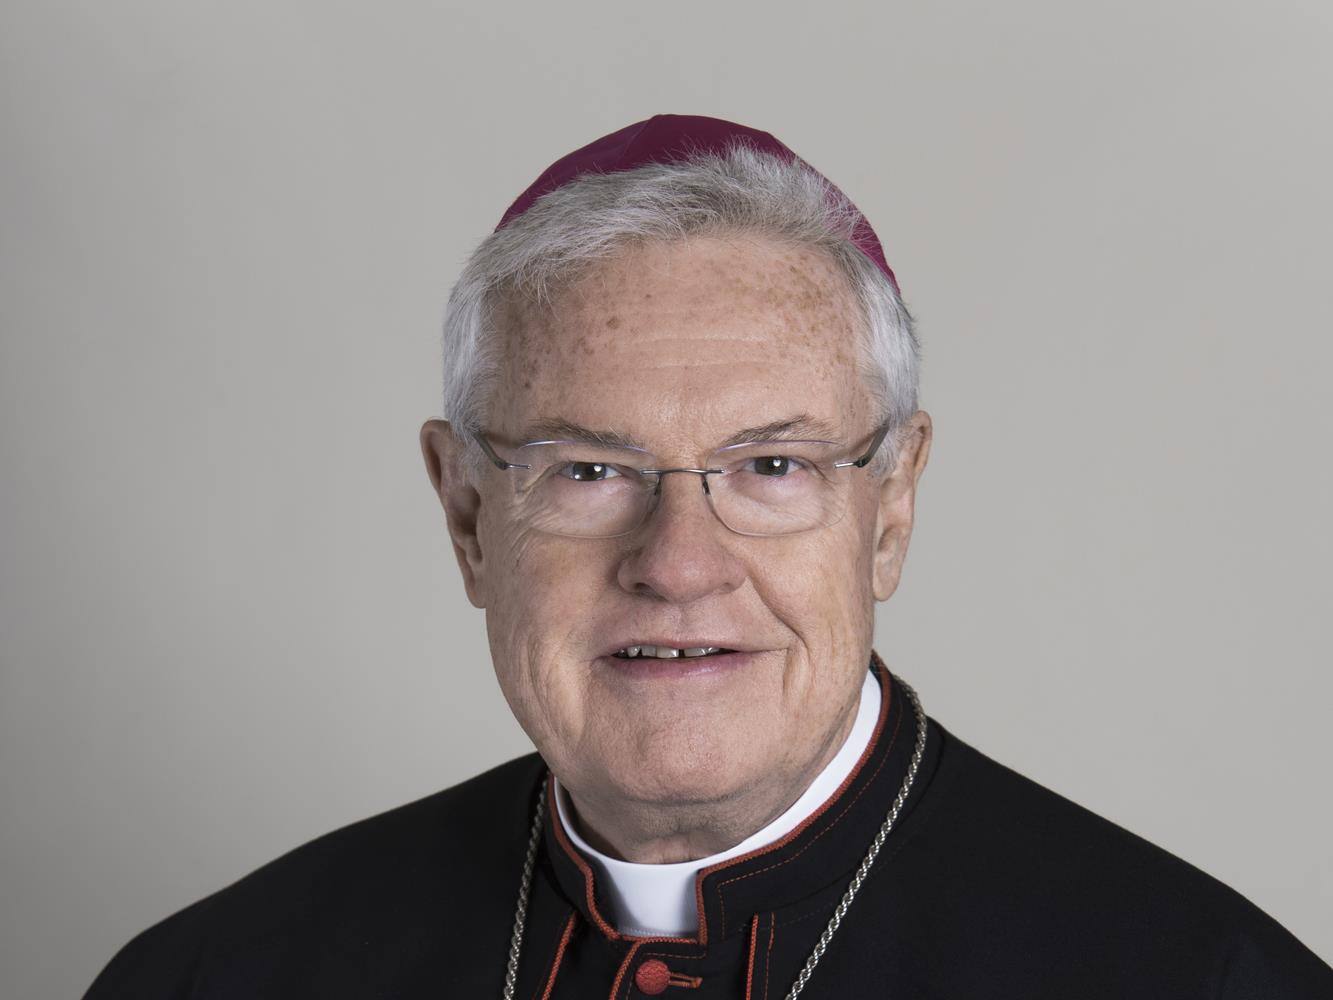 Arcibiskup Charles D. Balvo byl jmenován apoštolským nunciem v Austrálii